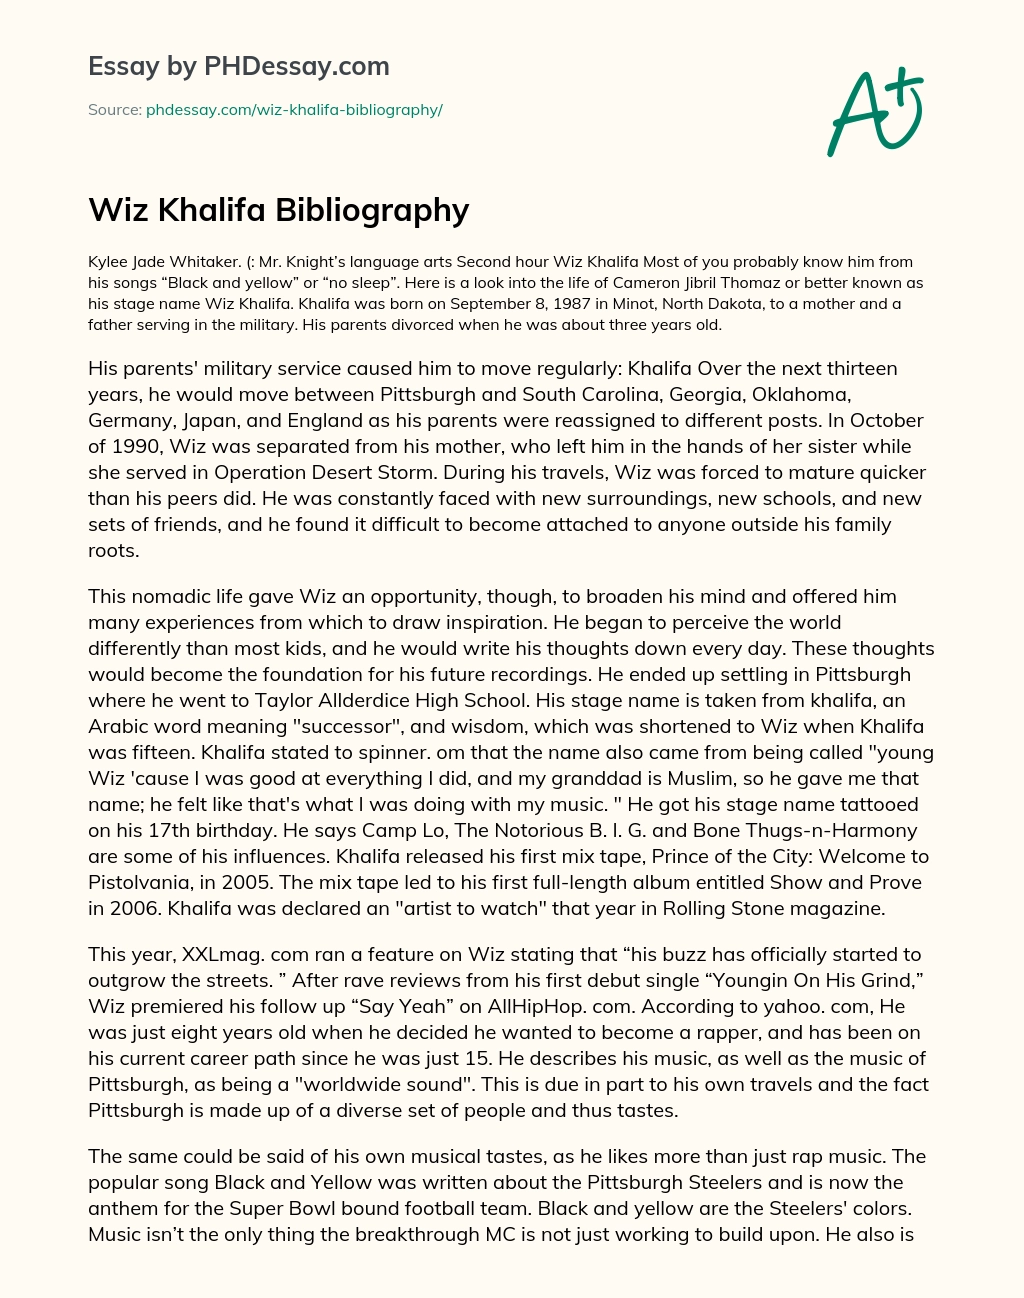 Wiz Khalifa Bibliography essay